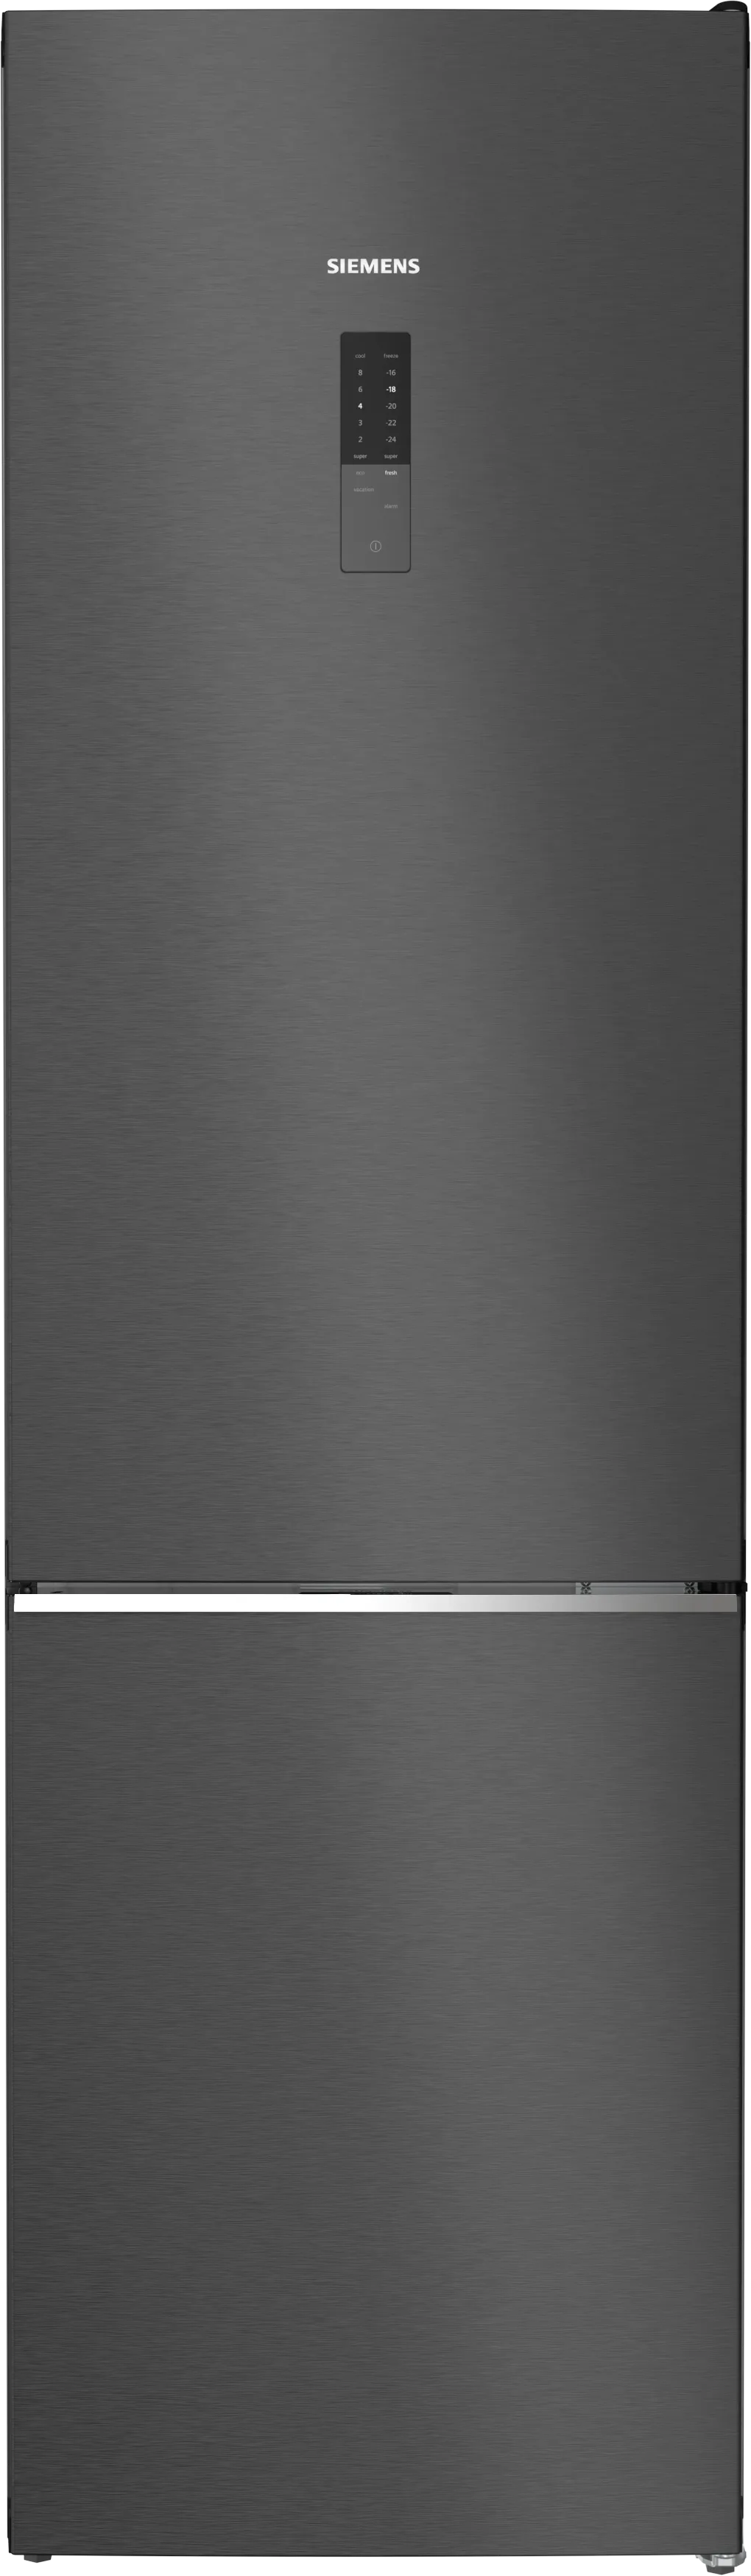 iQ500 Freistehende Kühl-Gefrier-Kombination mit Gefrierbereich unten 203 x 60 cm BlackSteel 